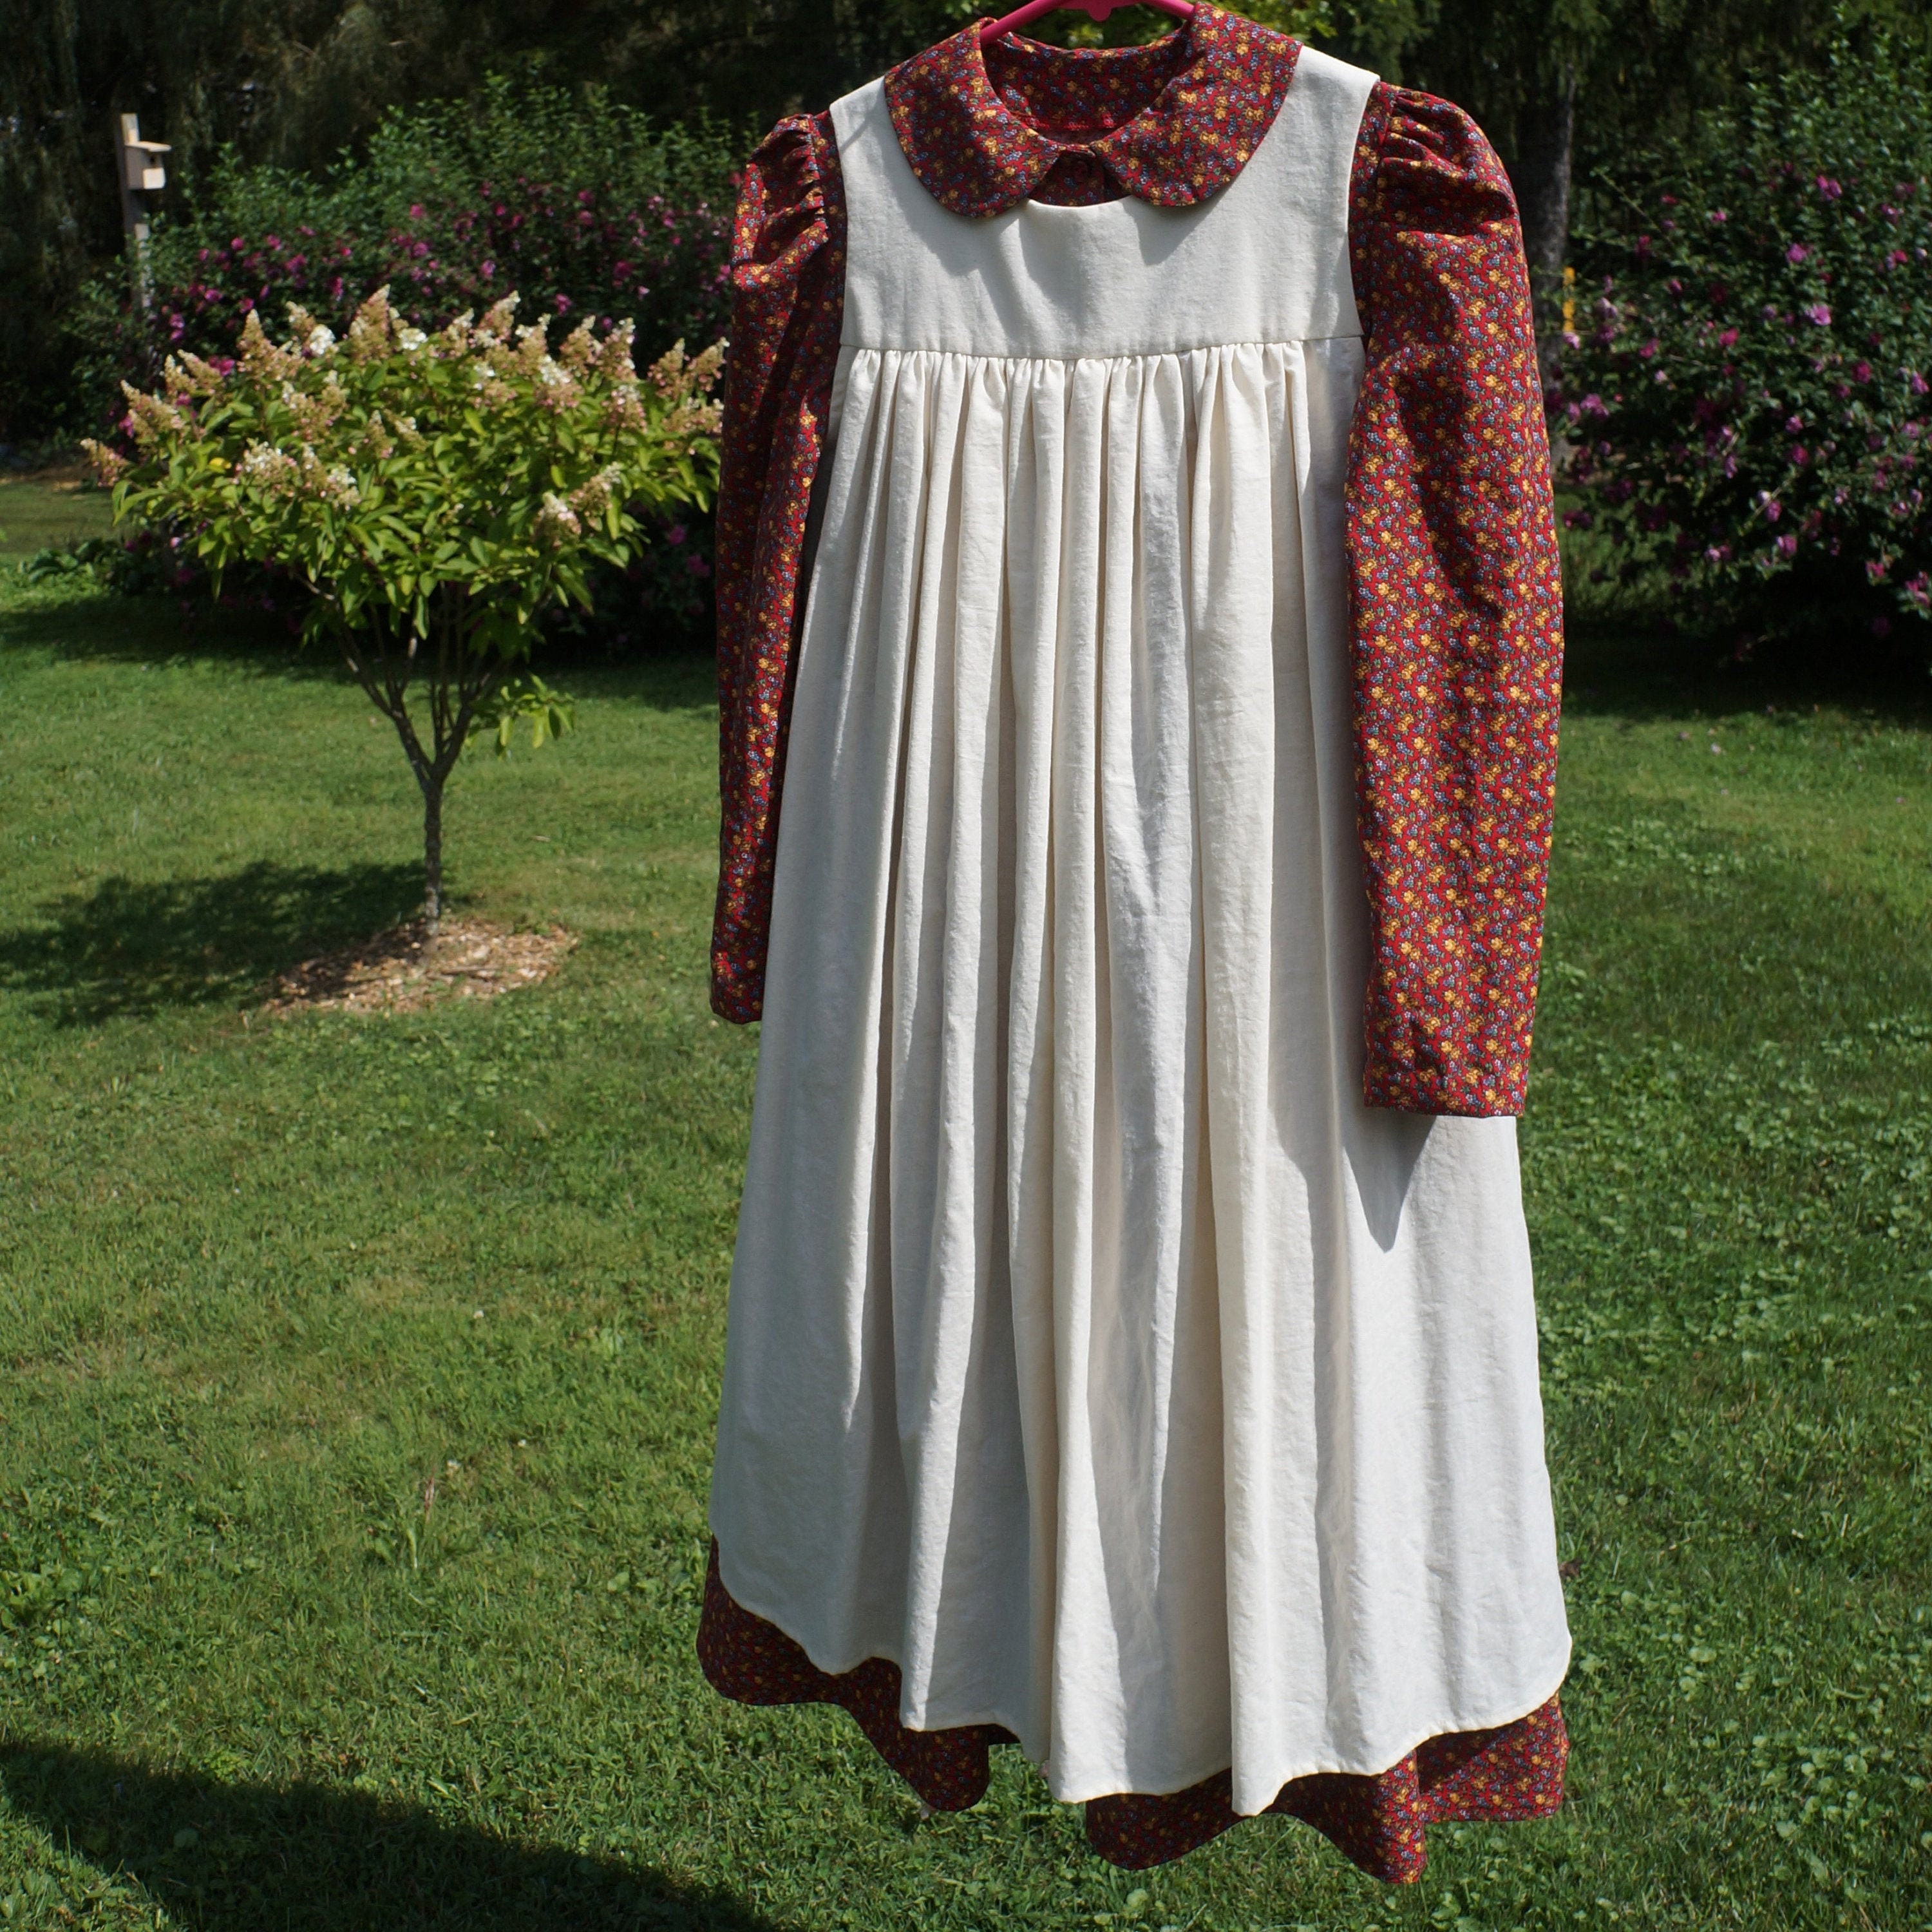 Pioneer Dress - $52.99, Pioneer & LDS Trek Clothes